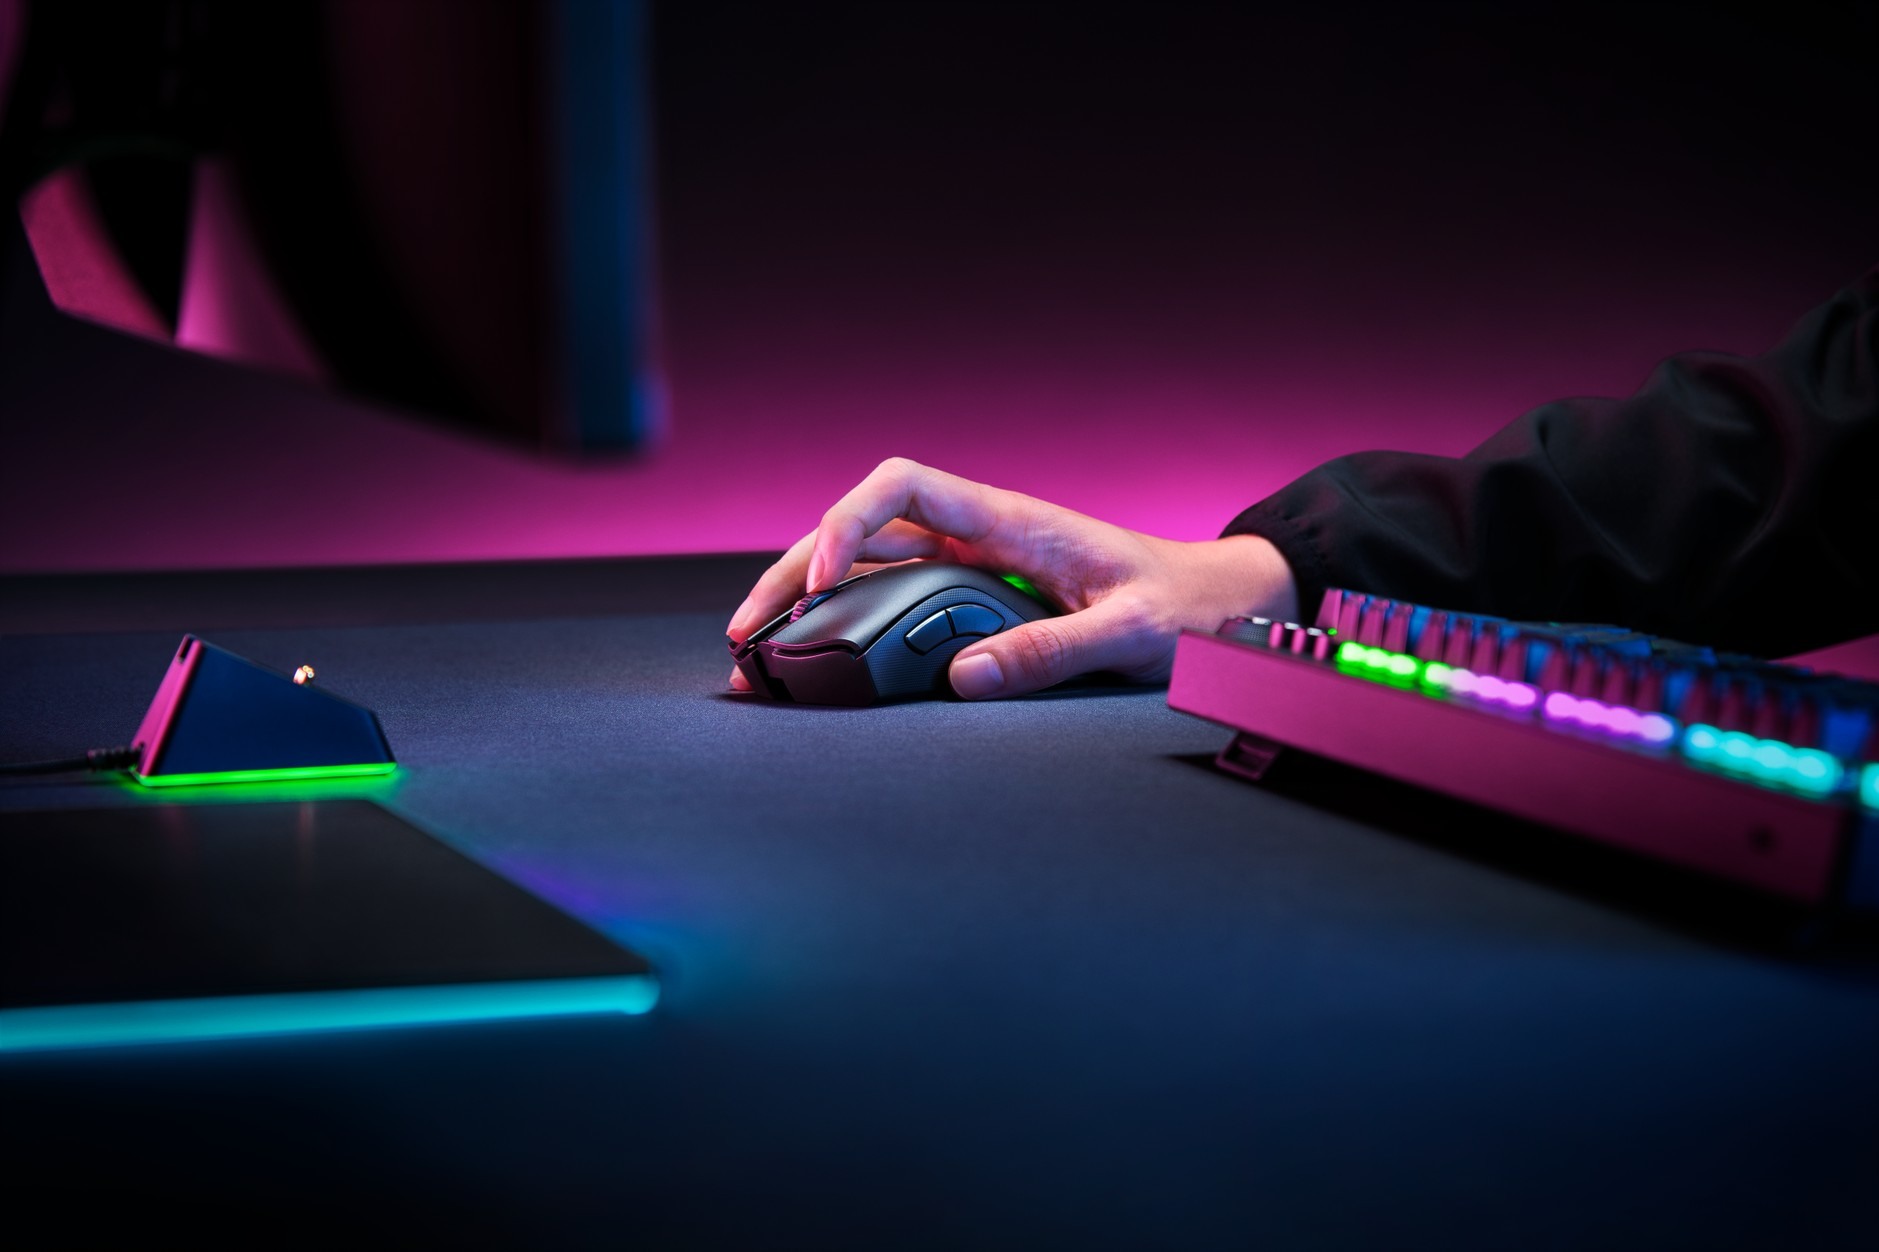 Razer 發表旗下首款無線遊戲鍵盤blackwidow V3 Pro 等共三款旗艦無線系列產品 巴哈姆特